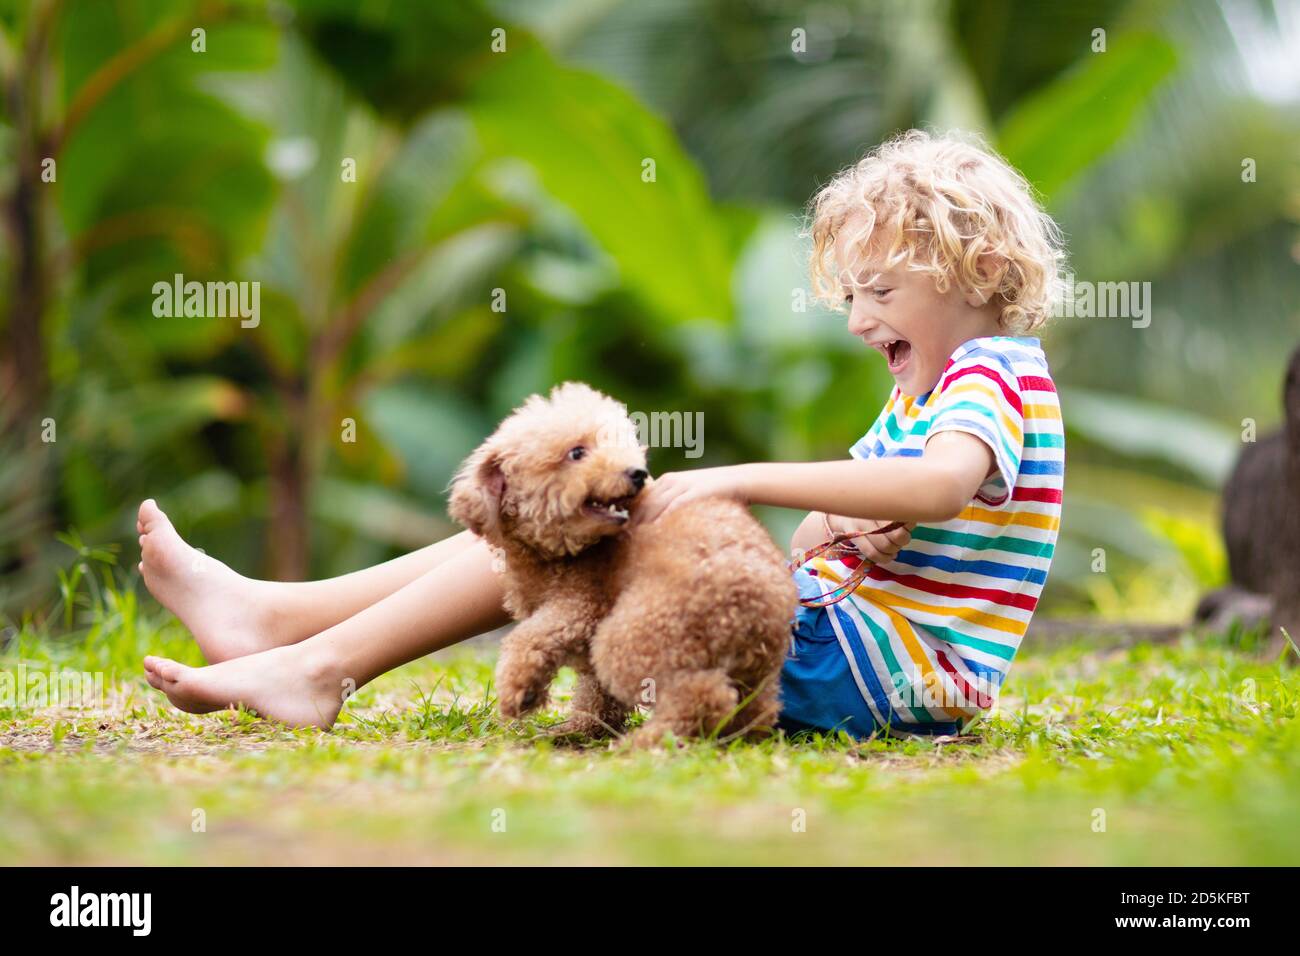 Kinder spielen mit niedlichem kleinen Welpen. Kinder und Babyhund spielen im sonnigen Sommergarten. Kleiner Junge, der Welpen hält. Kind mit Haustier. Familie und Haustiere o Stockfoto